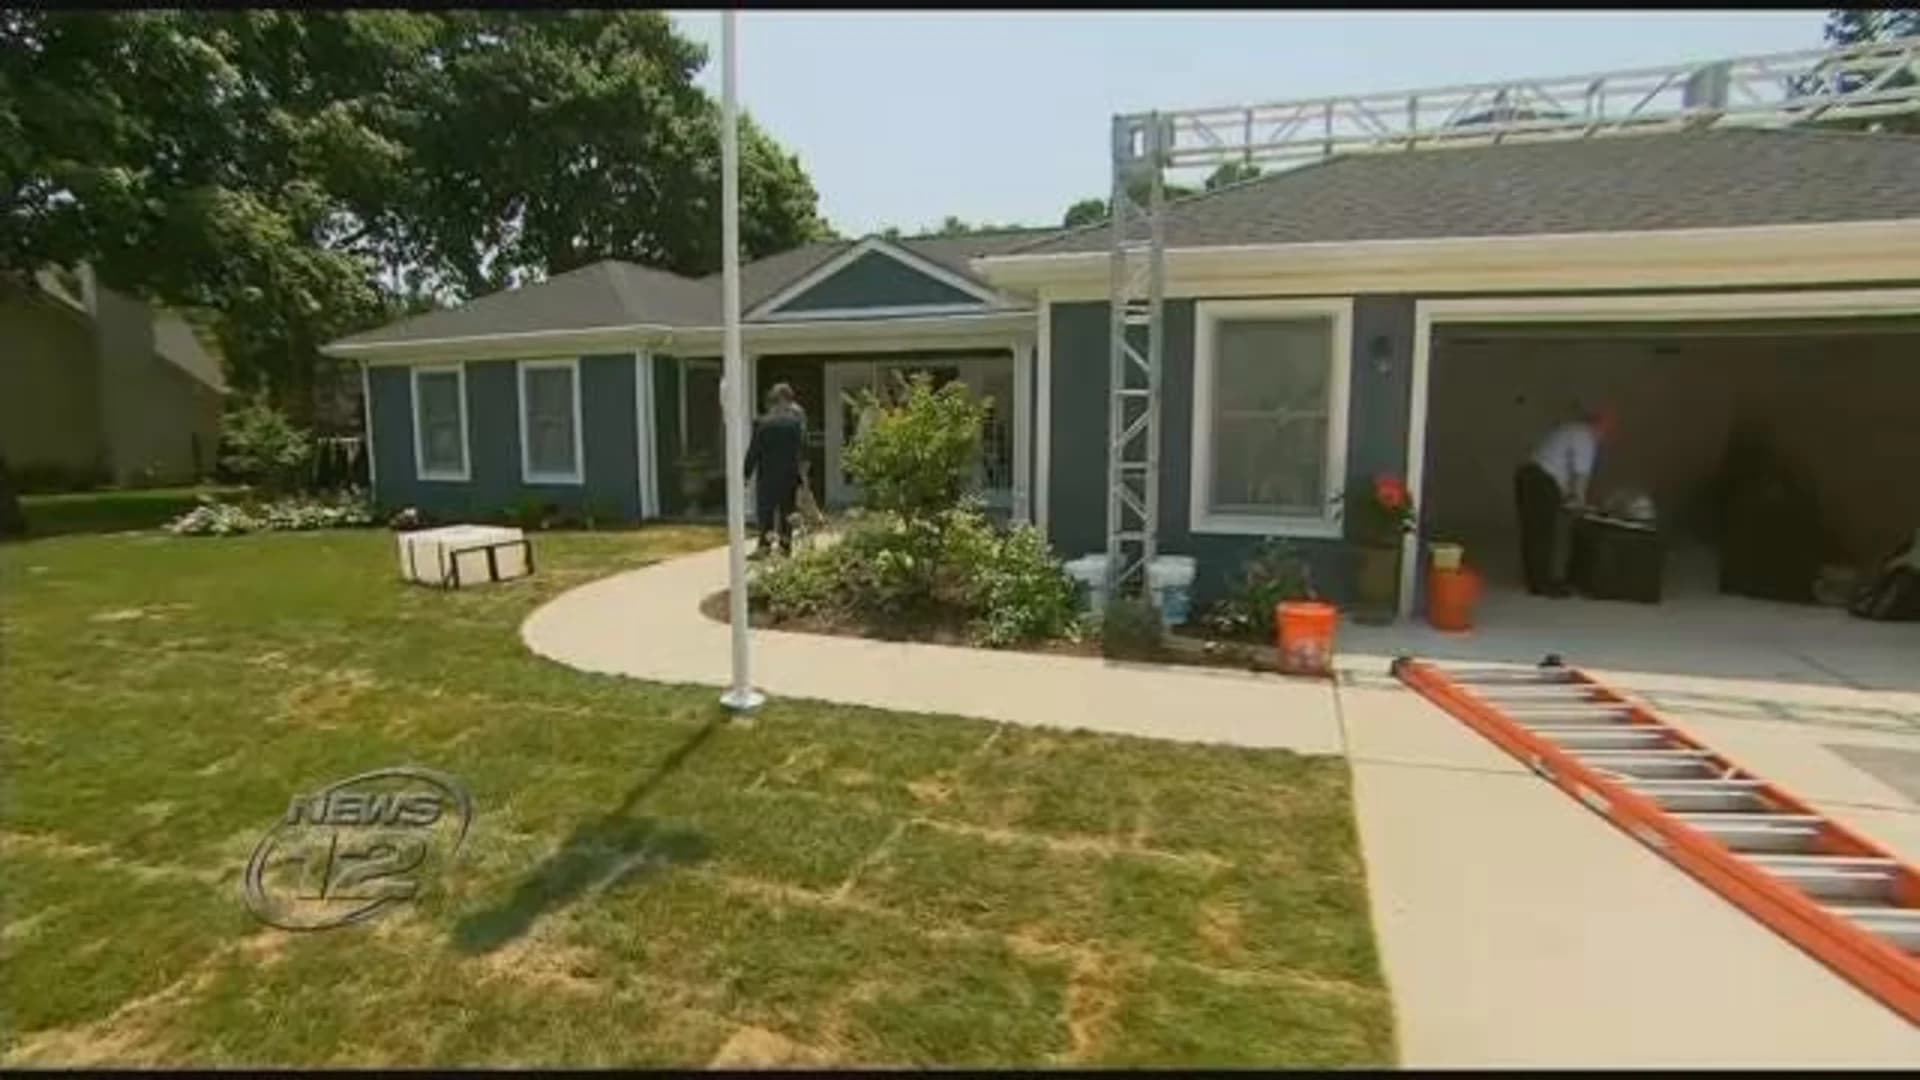 Iraq War veteran receives ‘smart home’ in Melville